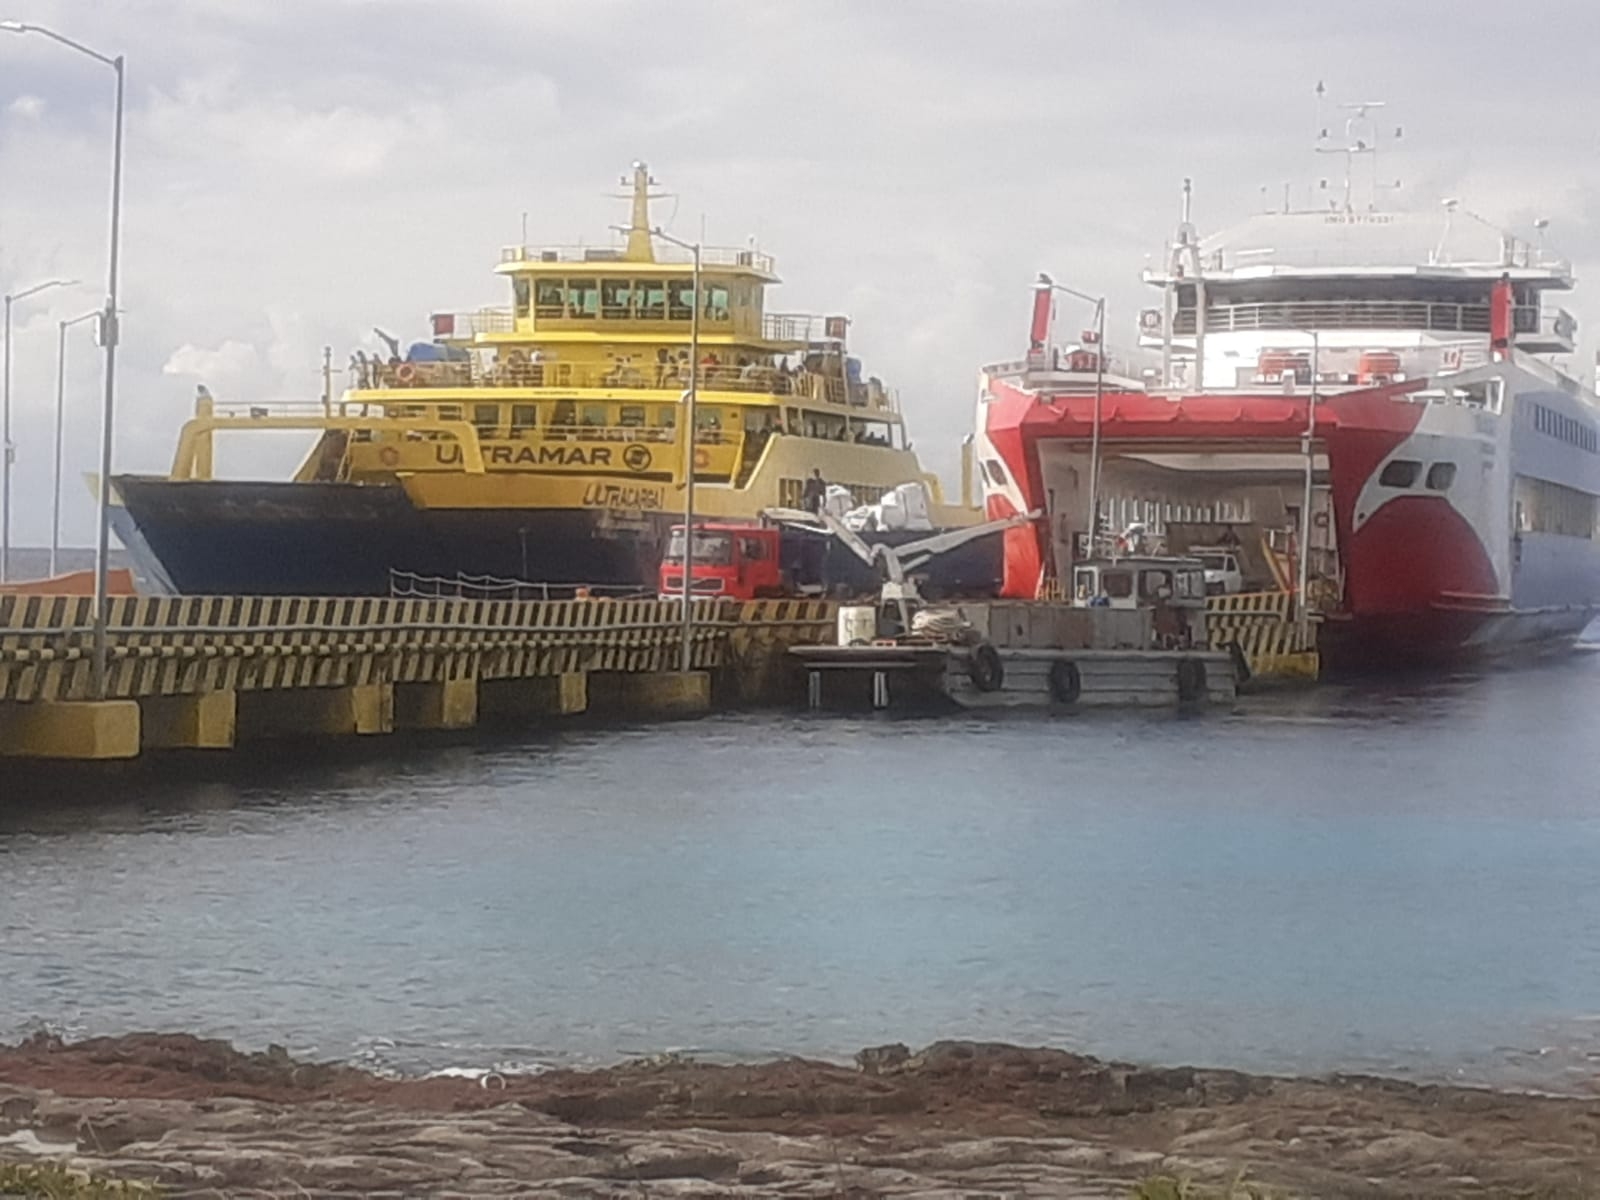 Los ferrys de la naviera Transcaribe suspenderán operaciones hasta que la empresa decida que es momento de reactivar cruces en Cozumel